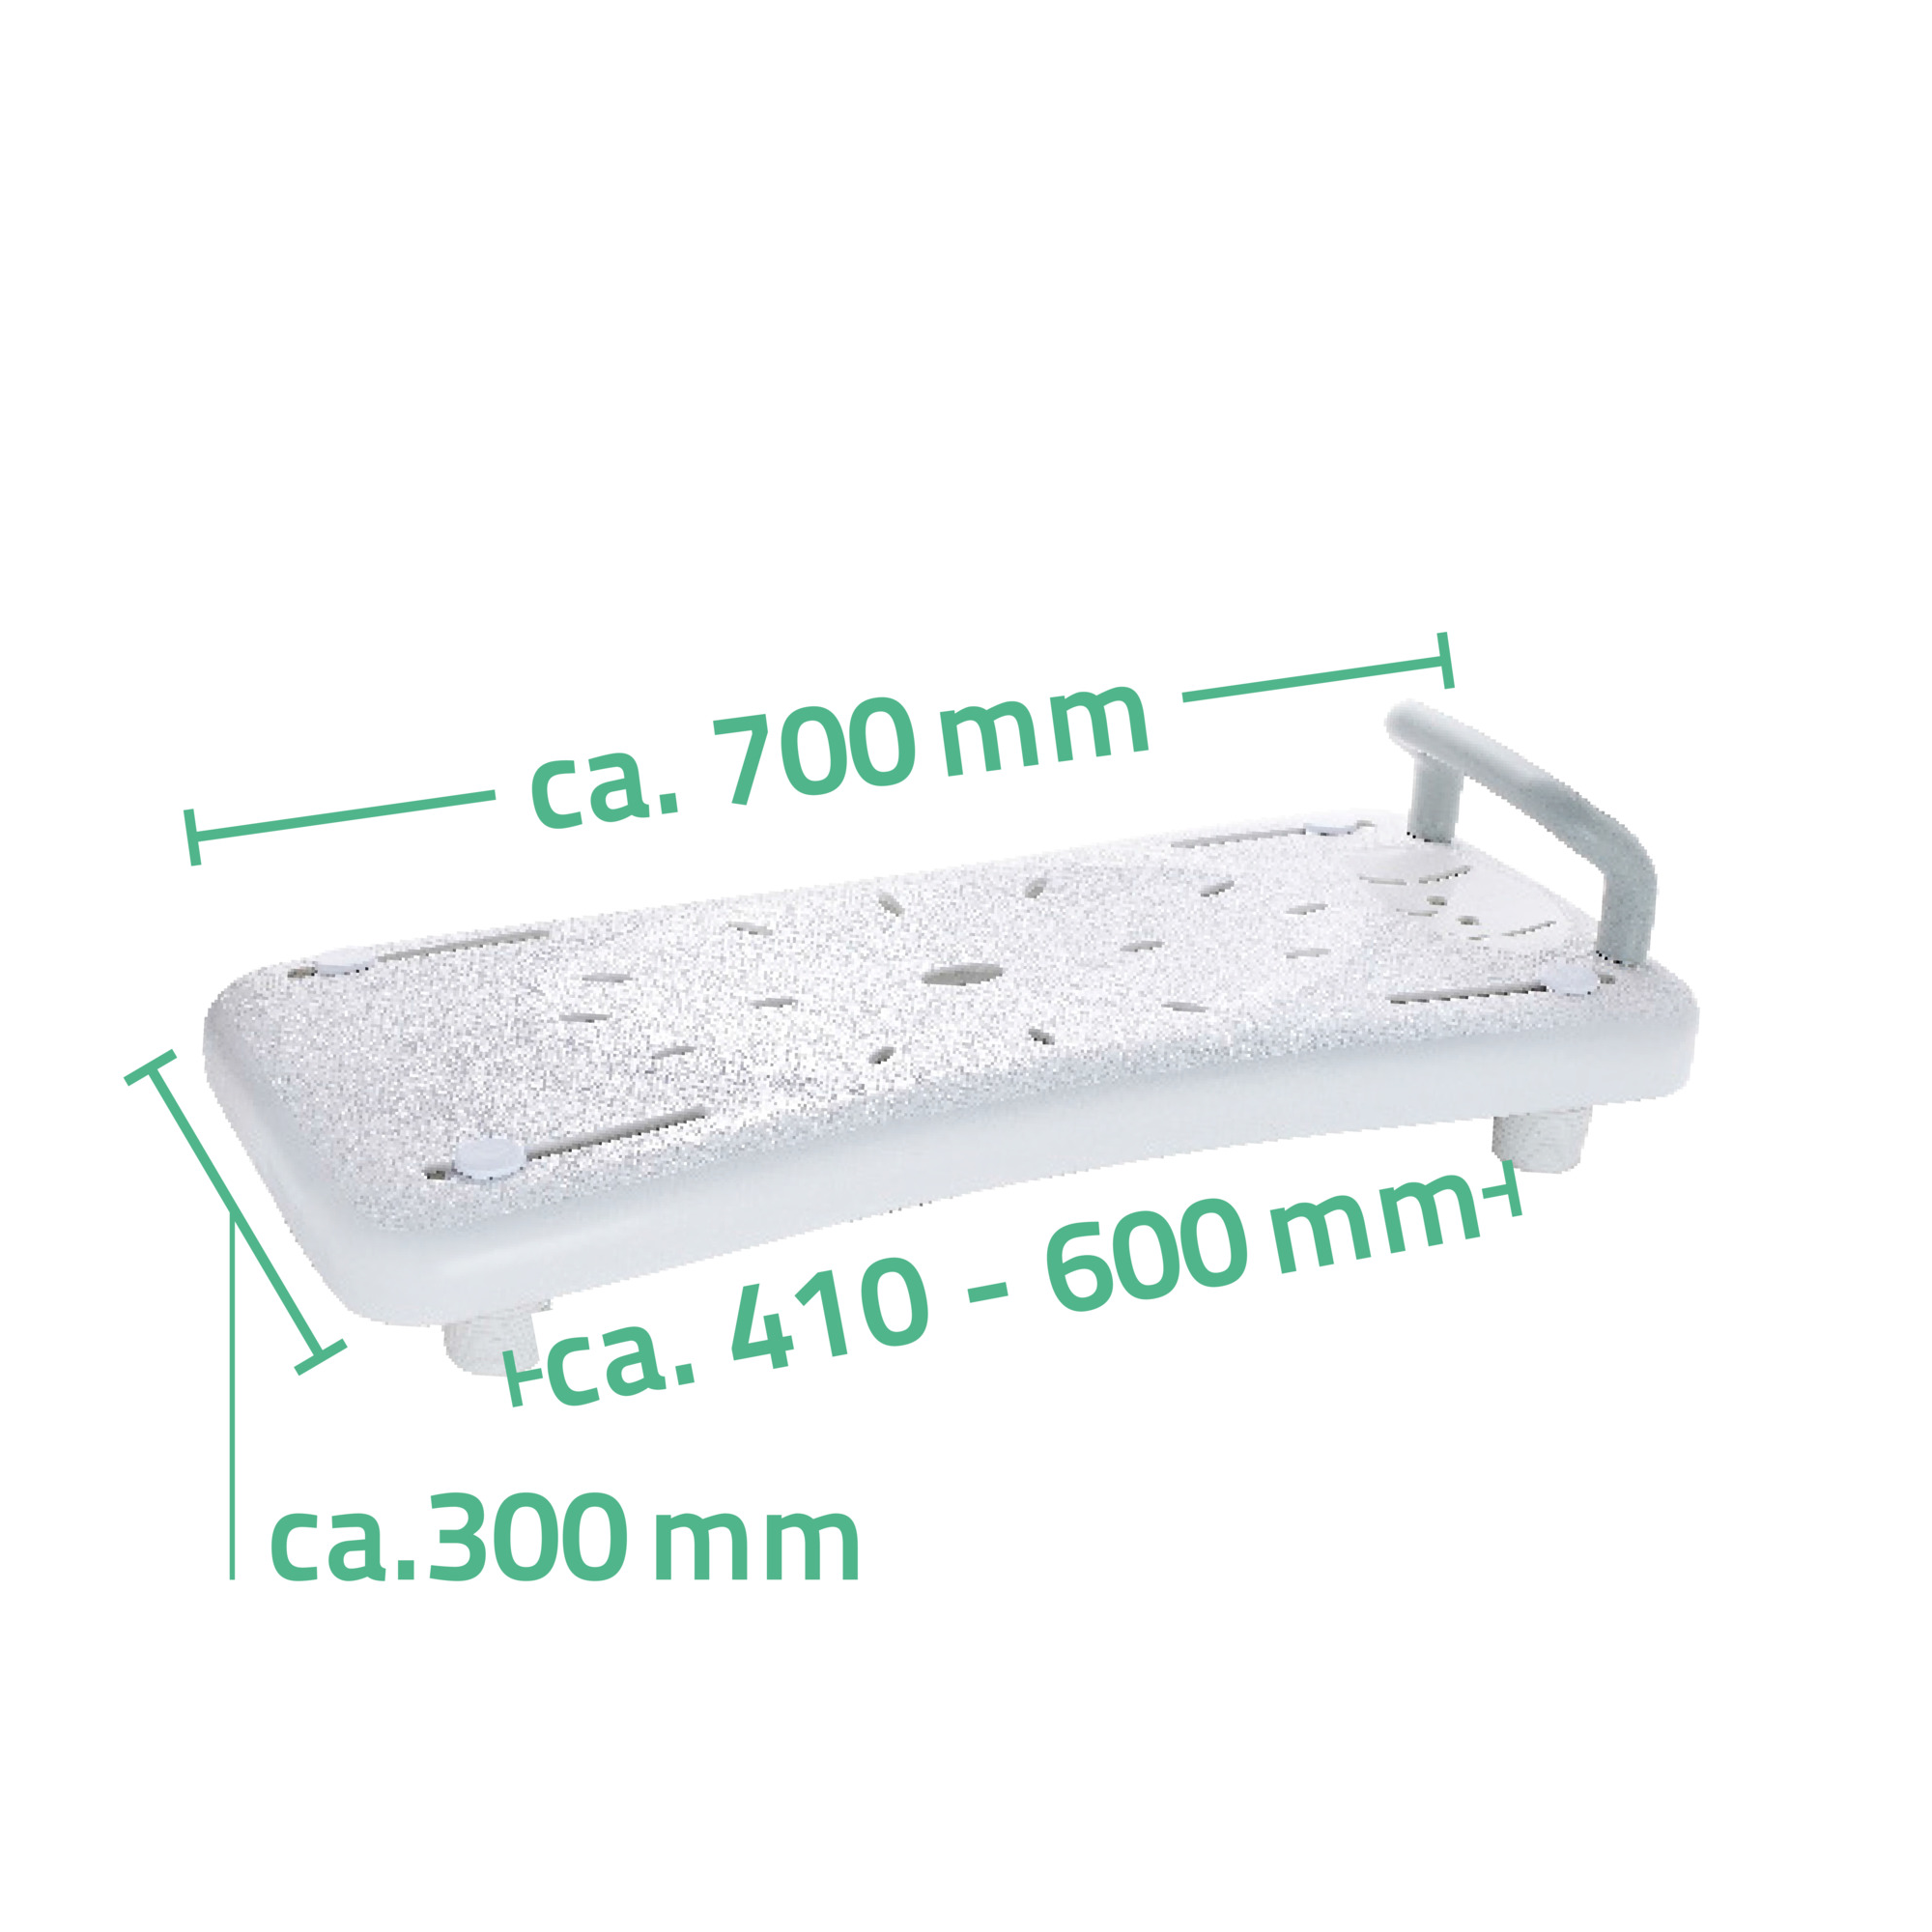 Badewannenbrett mit Haltegriff 'Comfort' weiß, 70 x 31 cm, bis 150 kg + product picture